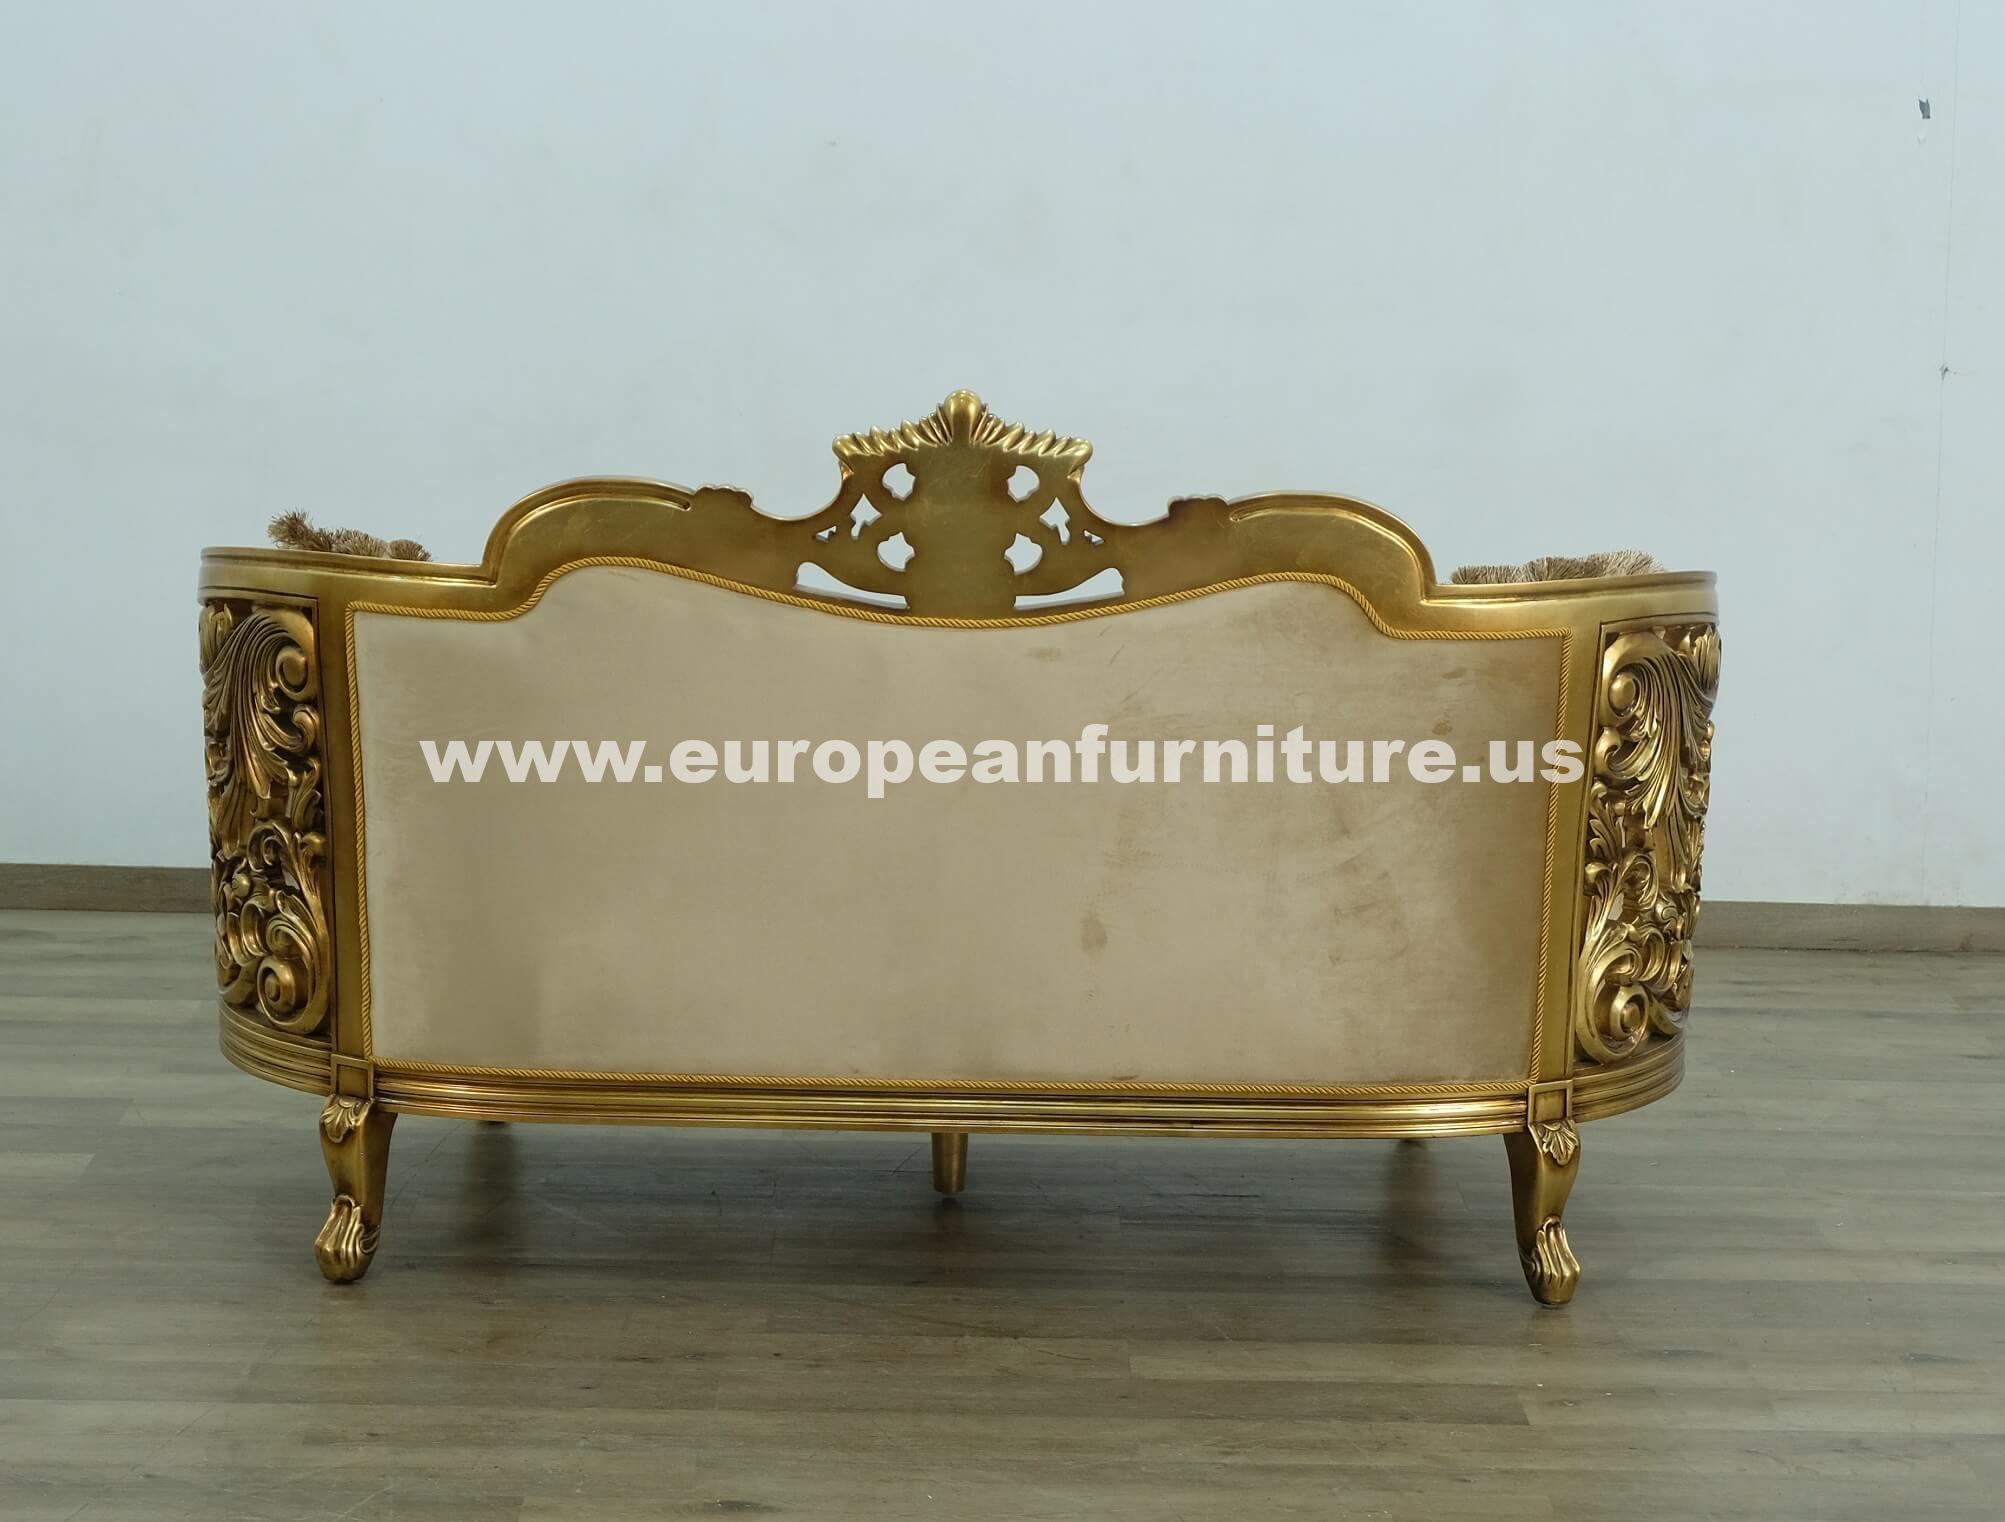 

                    
EUROPEAN FURNITURE BELLAGIO Loveseat Antique/Bronze Fabric Purchase 
